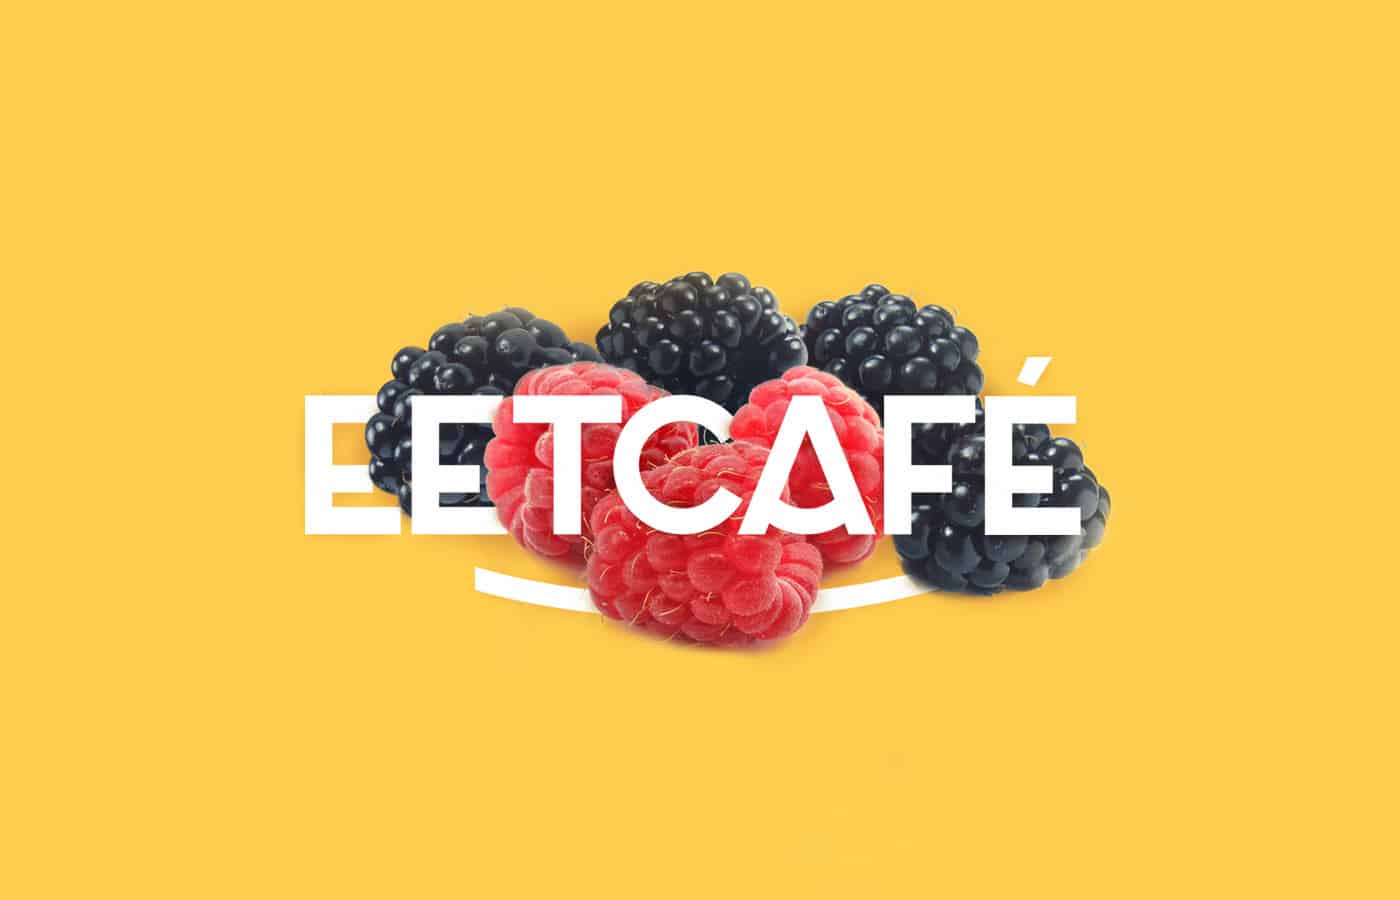 Eetcafe-01